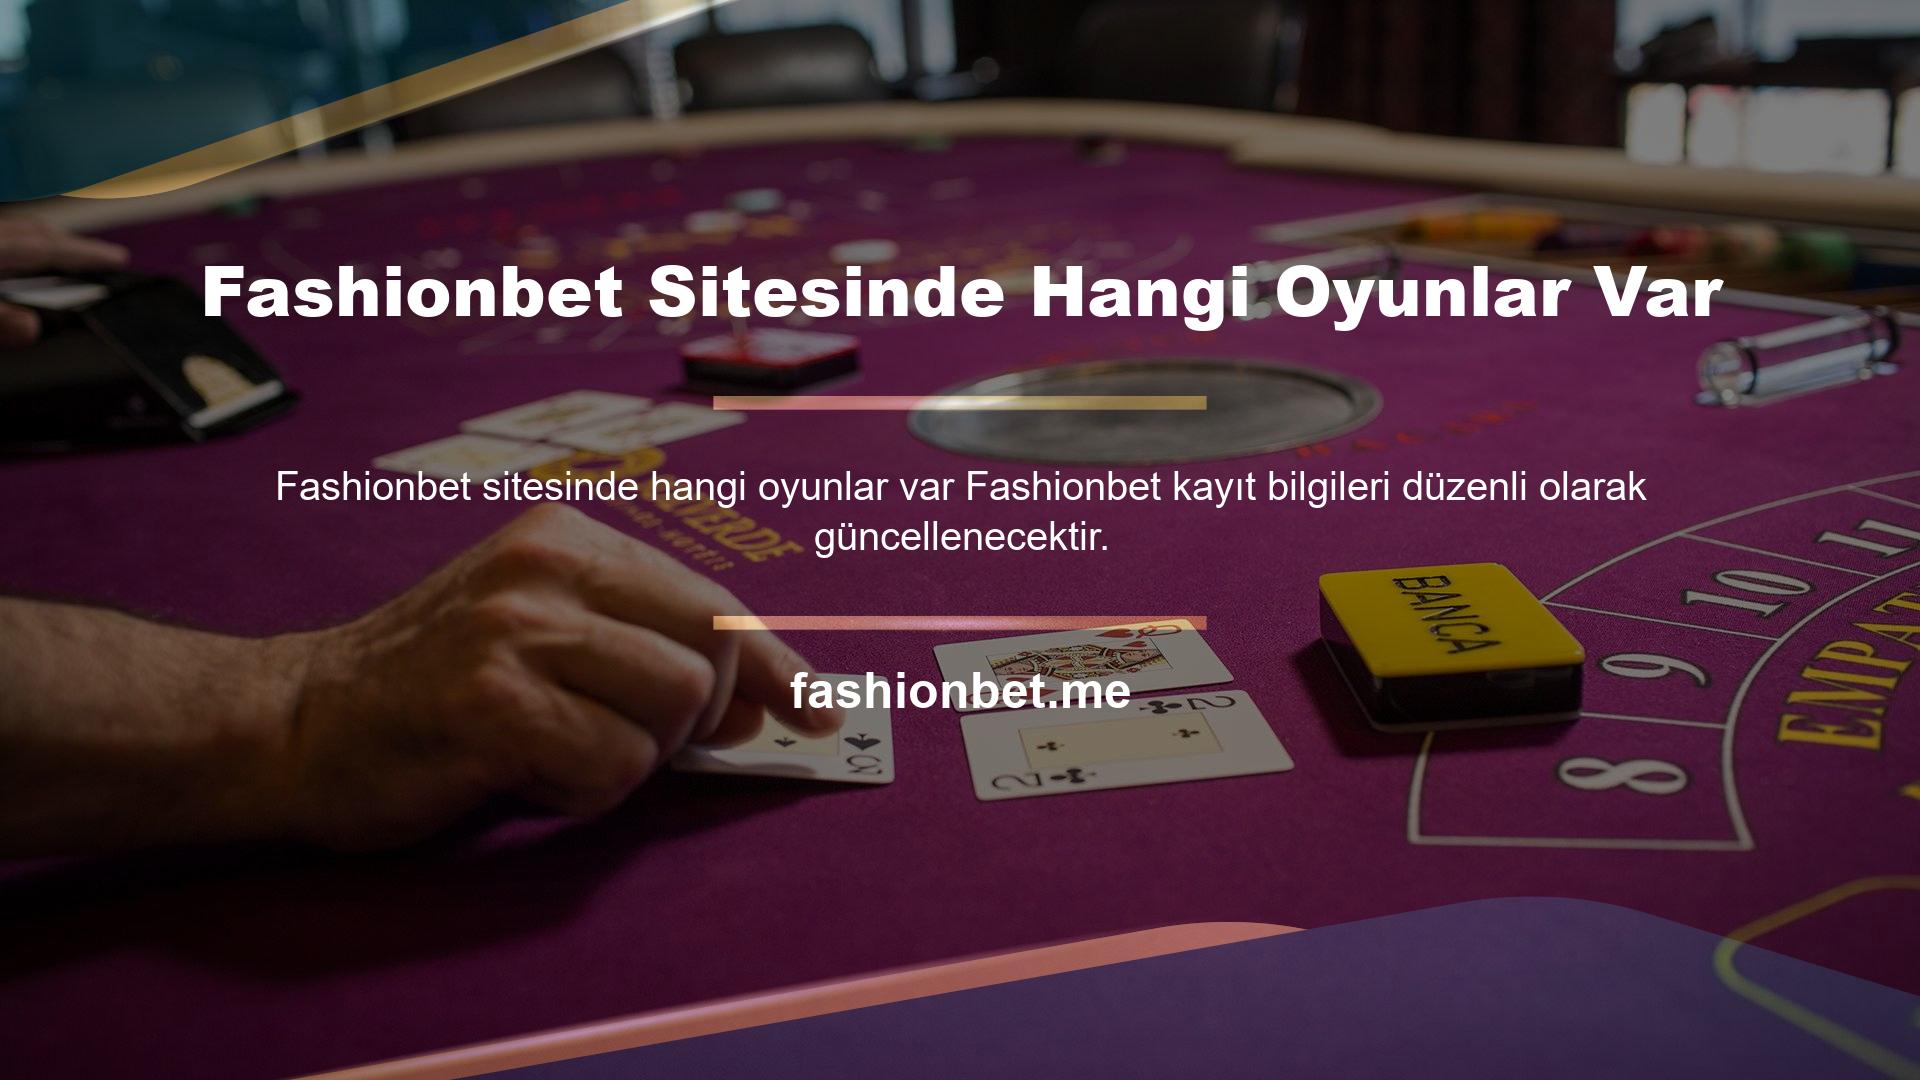 Çünkü Fashionbet web sitesi zaman zaman Türk kullanıcılara kapatılmaktadır